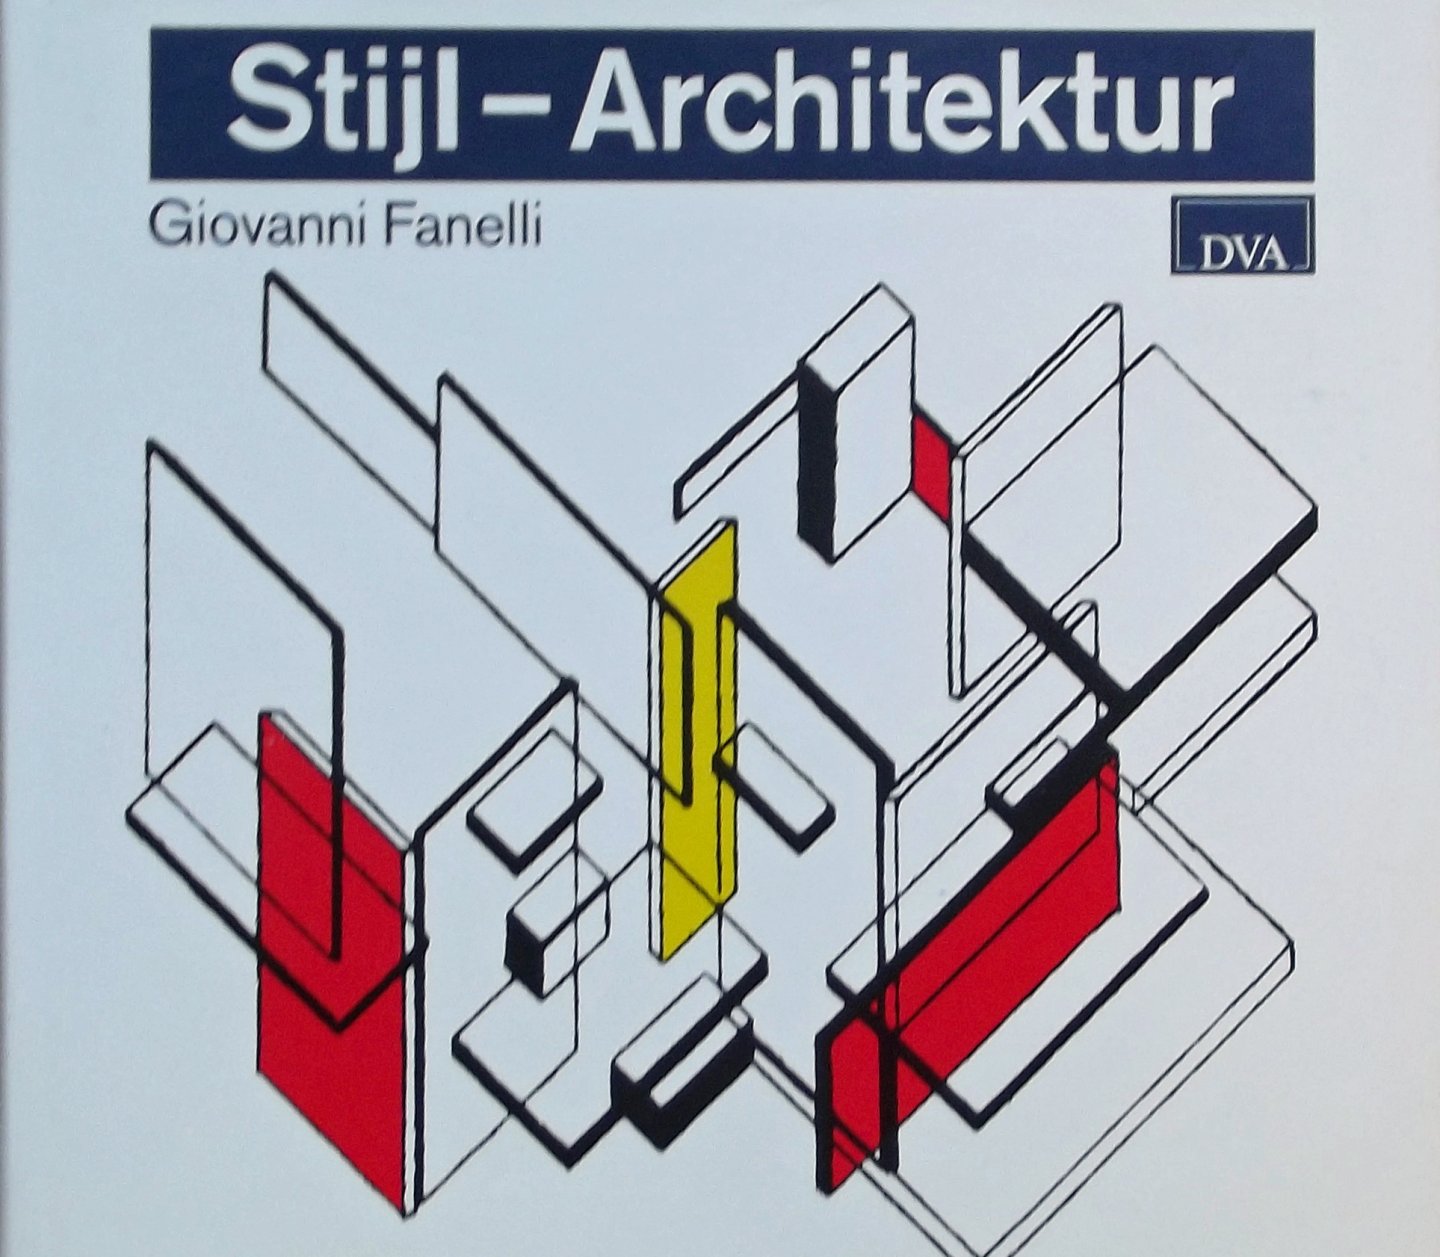 Fanelli, Giovanni. - Stijl Architektur Der niederländische Beitrag zur frühen Moderne